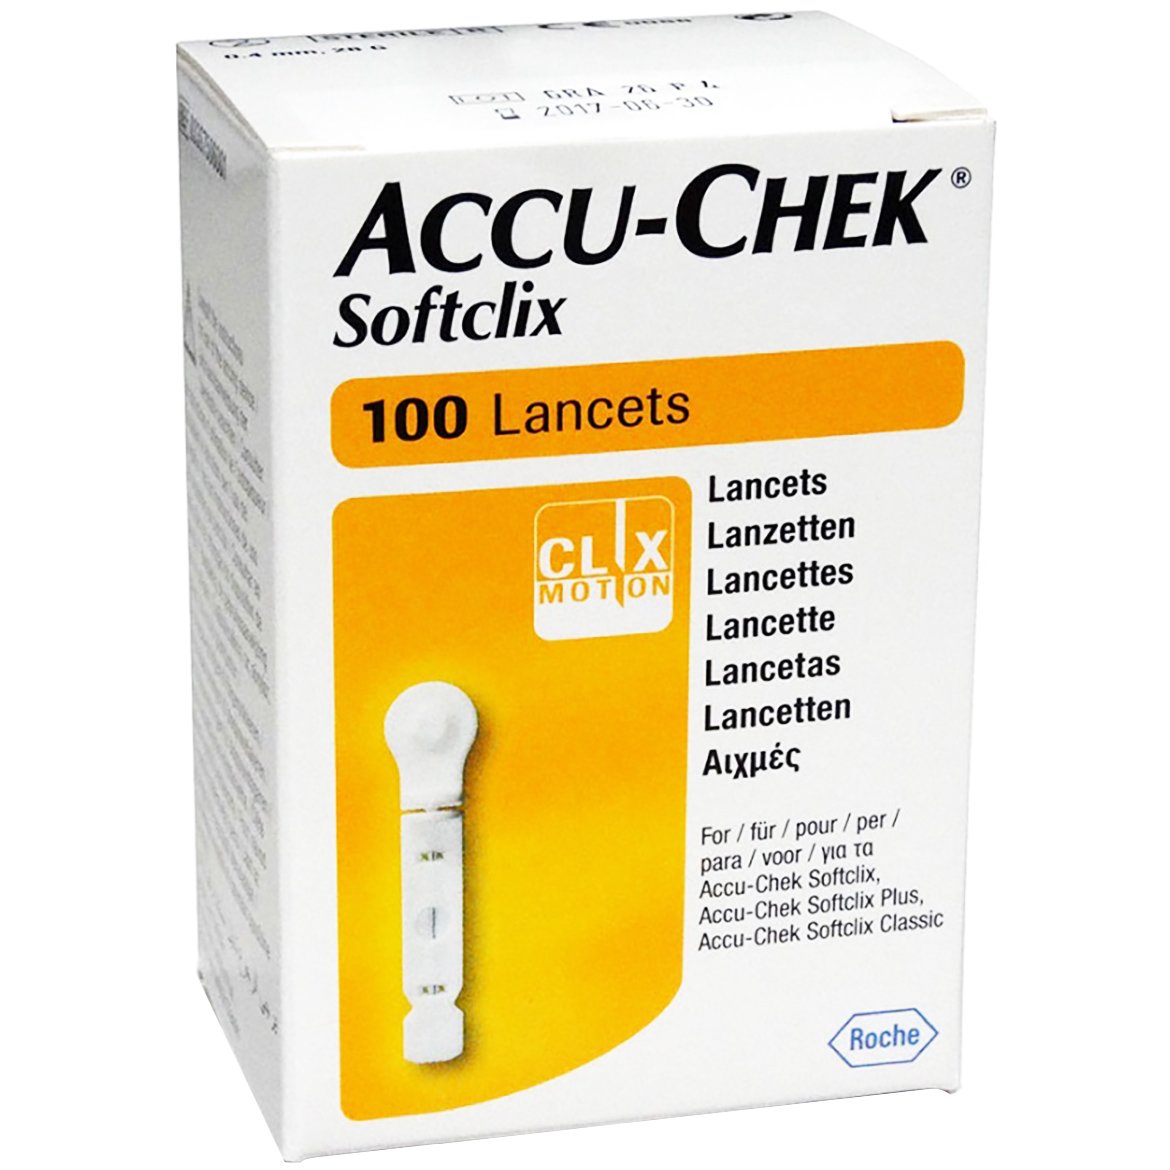 Accu-Chek Softclix Lancets Σκαρφιστήρες για το Σύστημα Παρακολούθησης Γλυκόζης Αίματος 100 Τεμάχια 51715